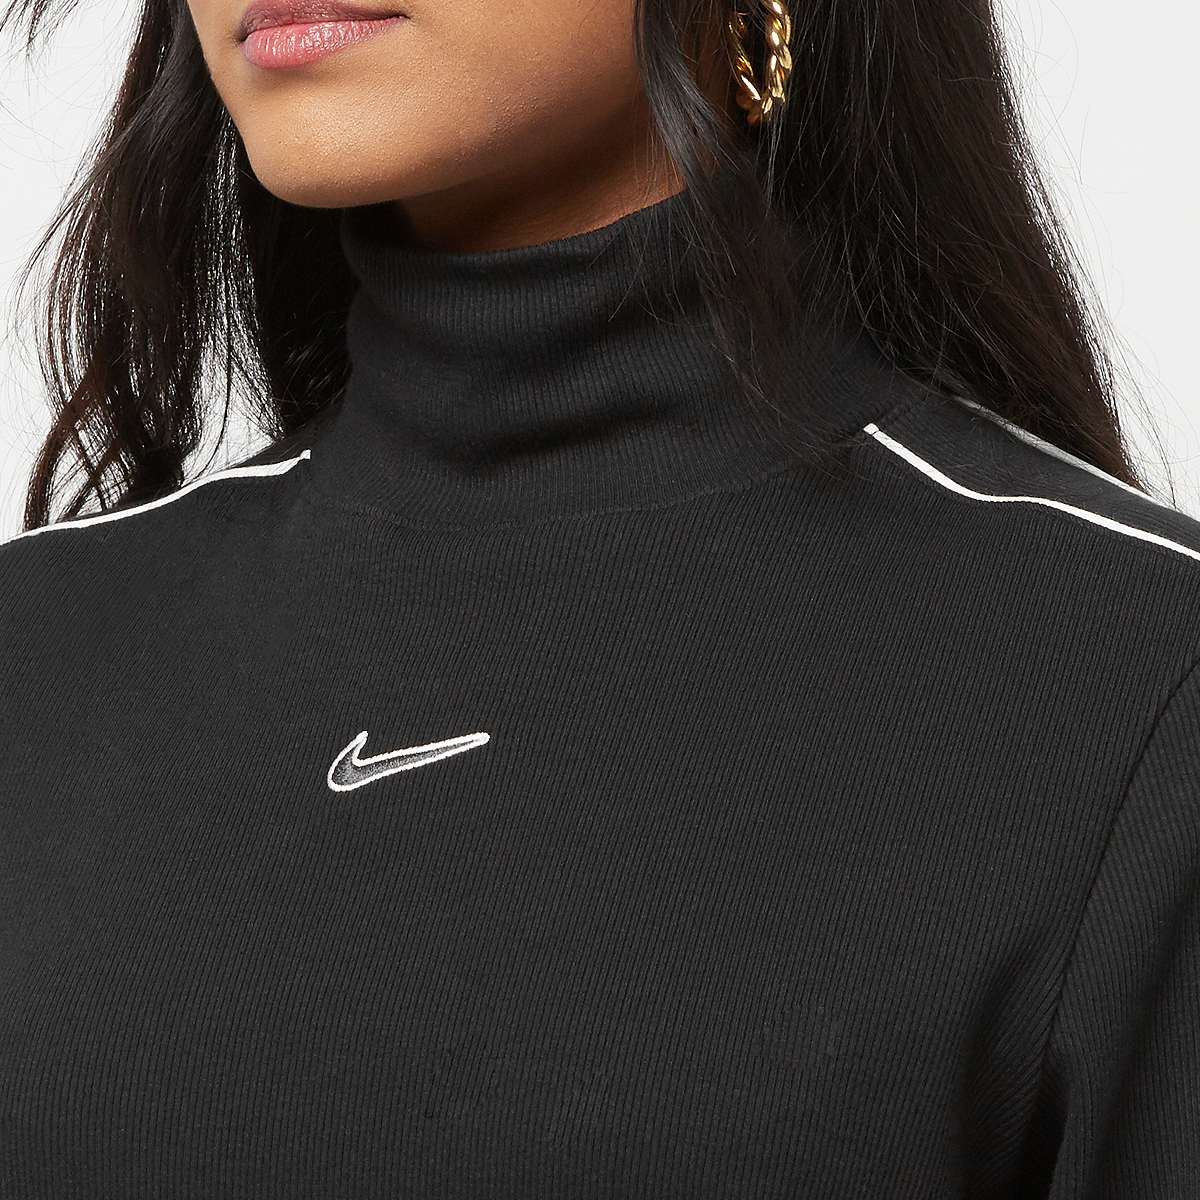 Nike Sportswear Longsleeve Top Longsleeves Dames black white maat: XS beschikbare maaten:XS M L